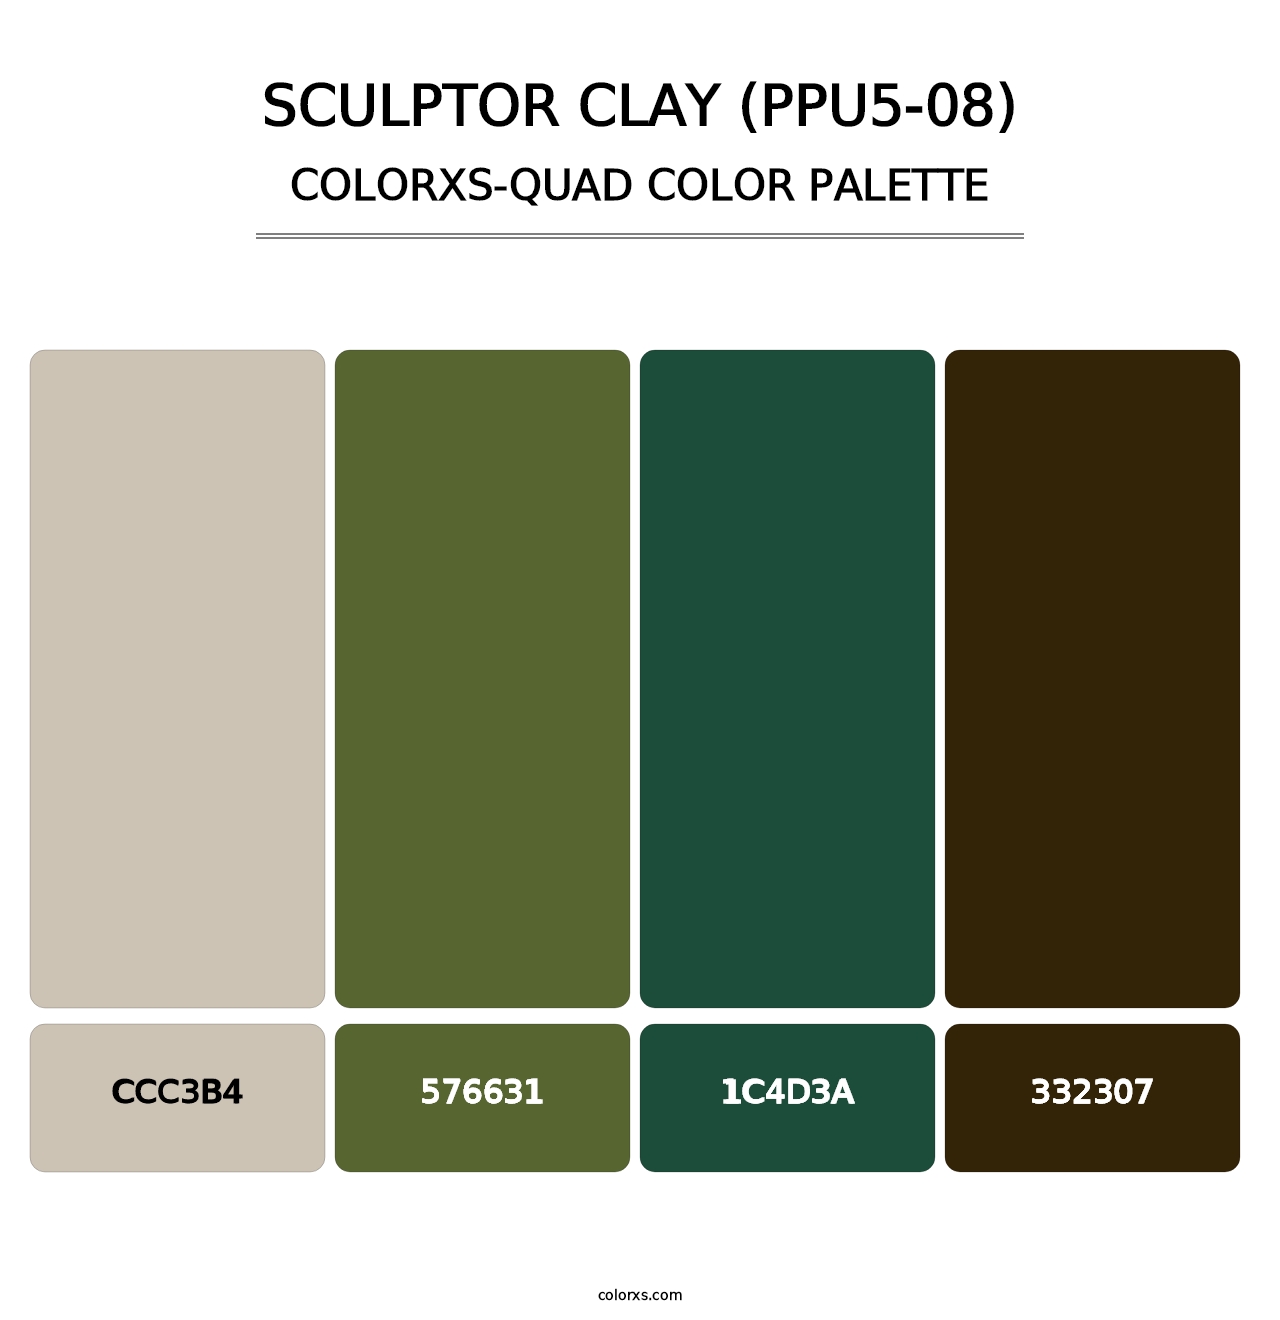 Sculptor Clay (PPU5-08) - Colorxs Quad Palette